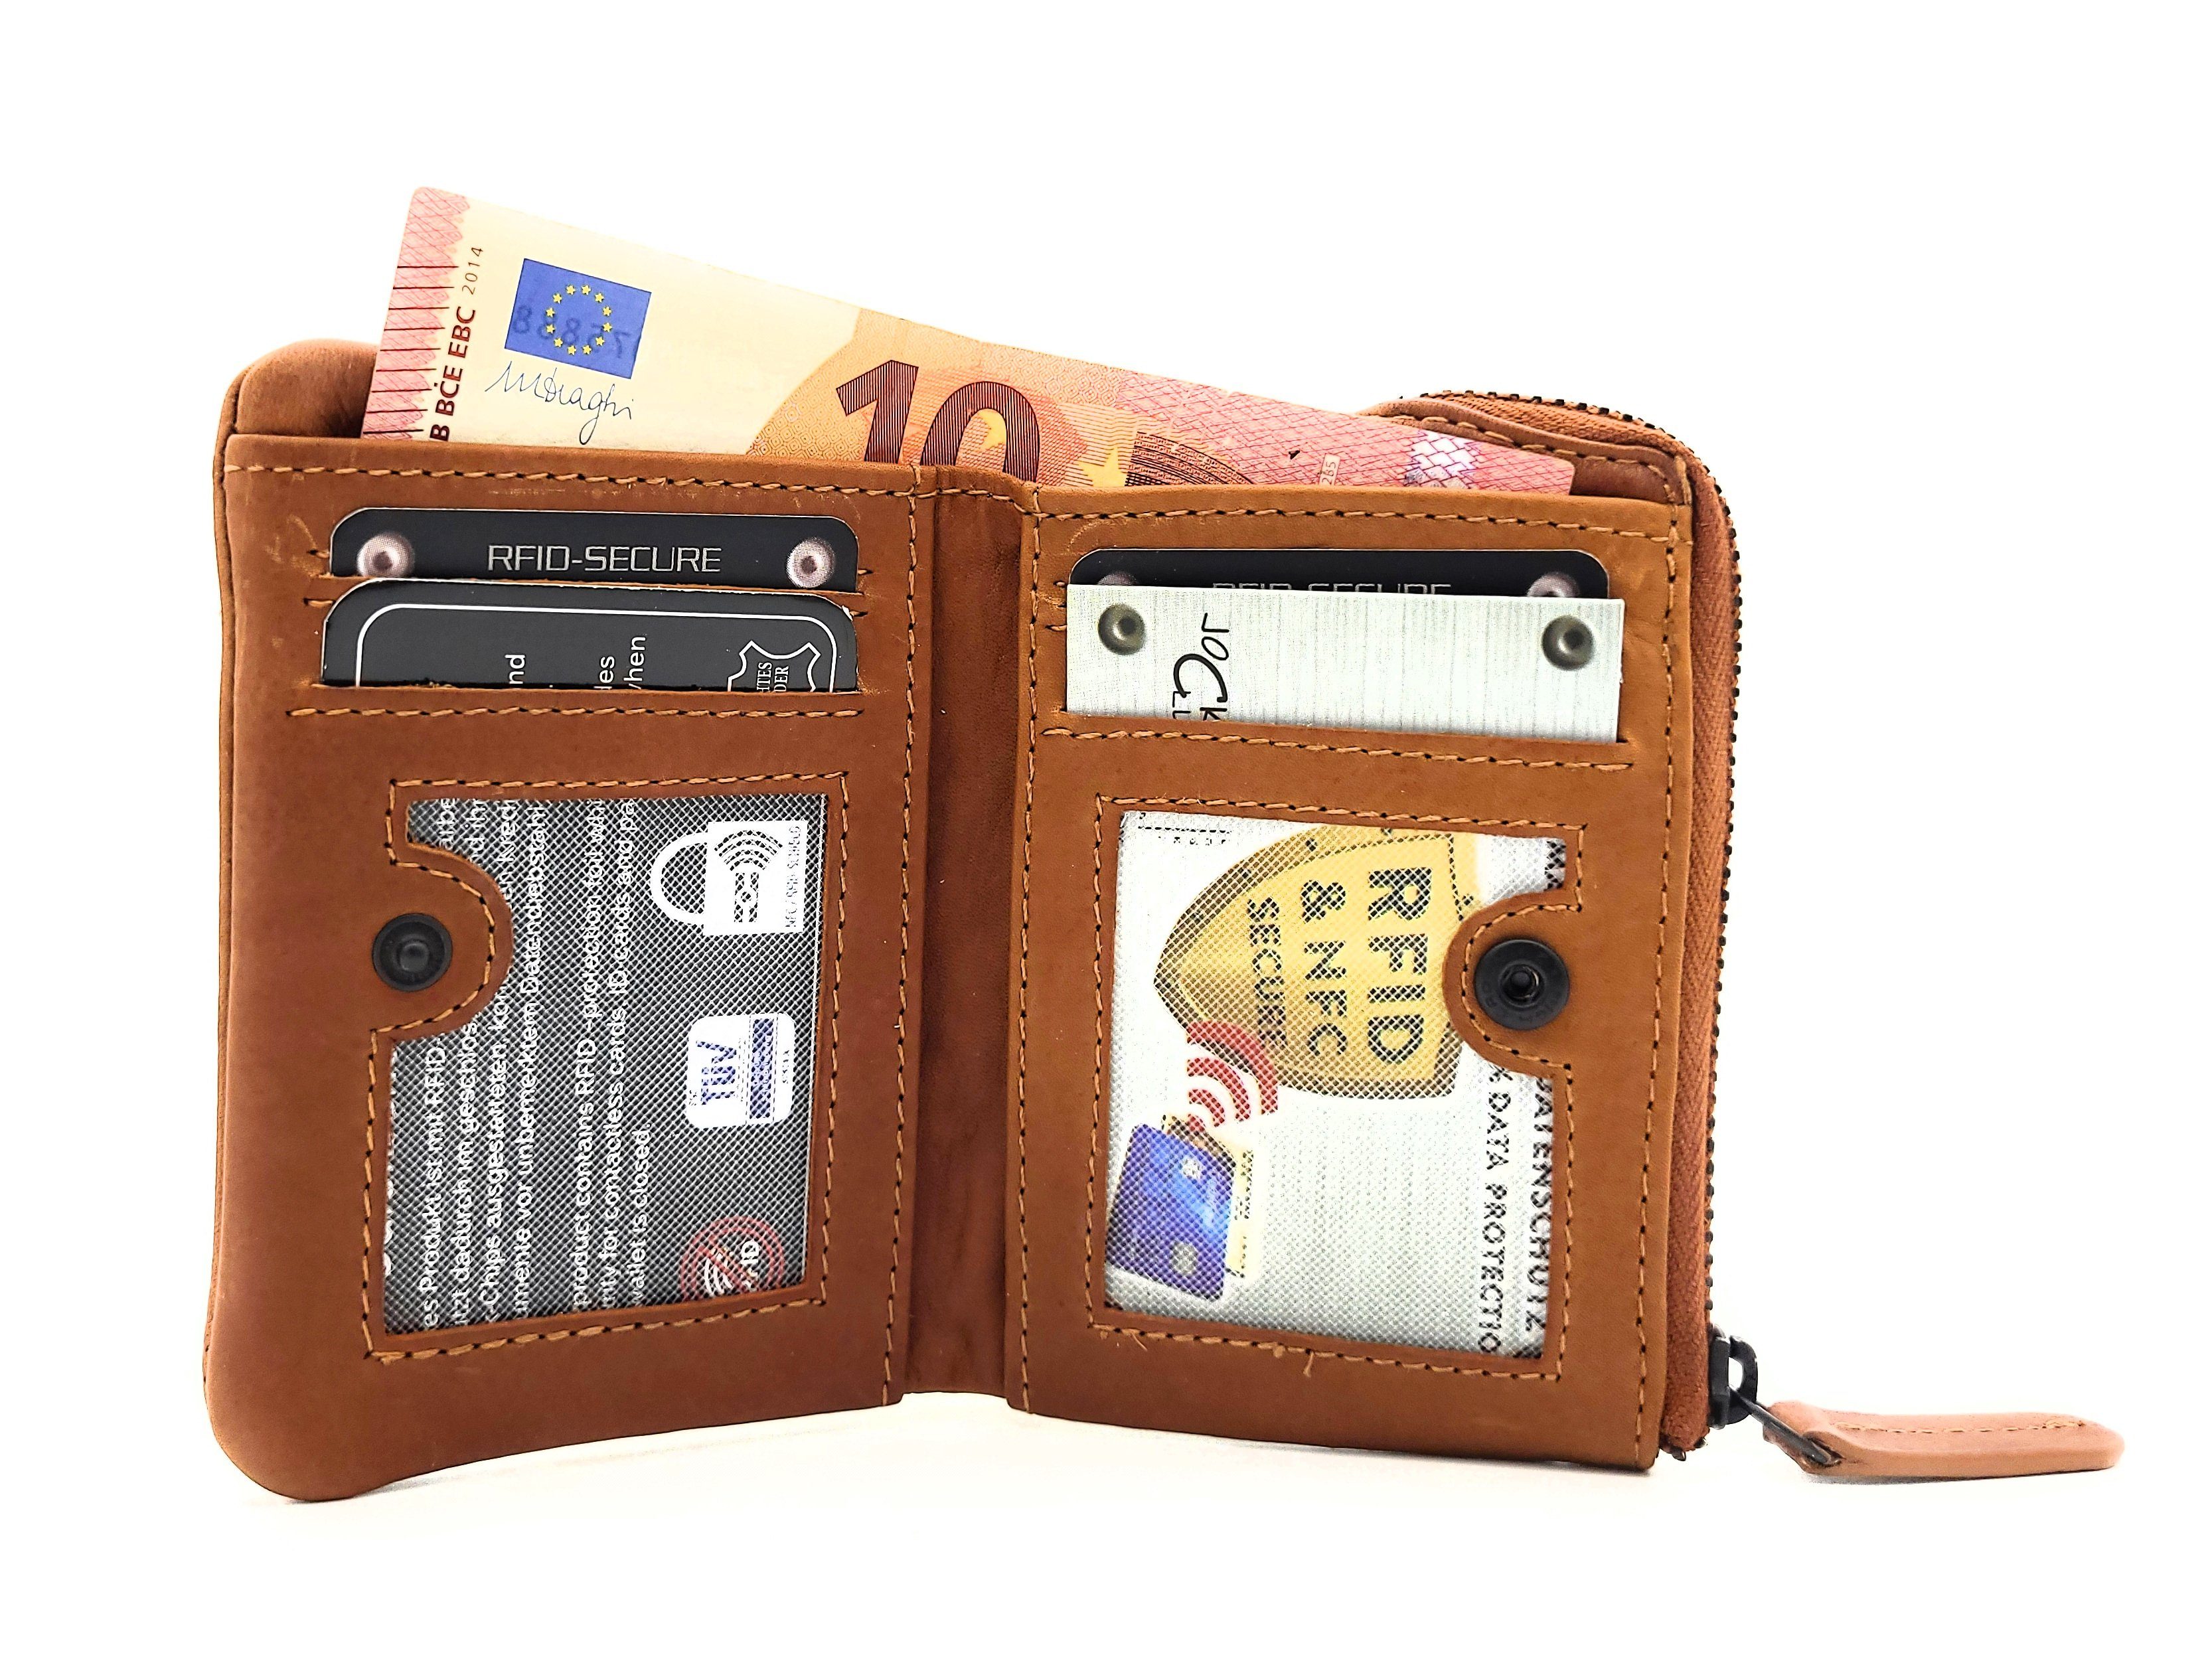 [Über 60 % Rabatt] JOCKEY CLUB Mini Geldbörse Rindleder, vintage, kompaktes RFID mit Leder Schutz, braun Format, echt Portemonnaie gewachstes cognac